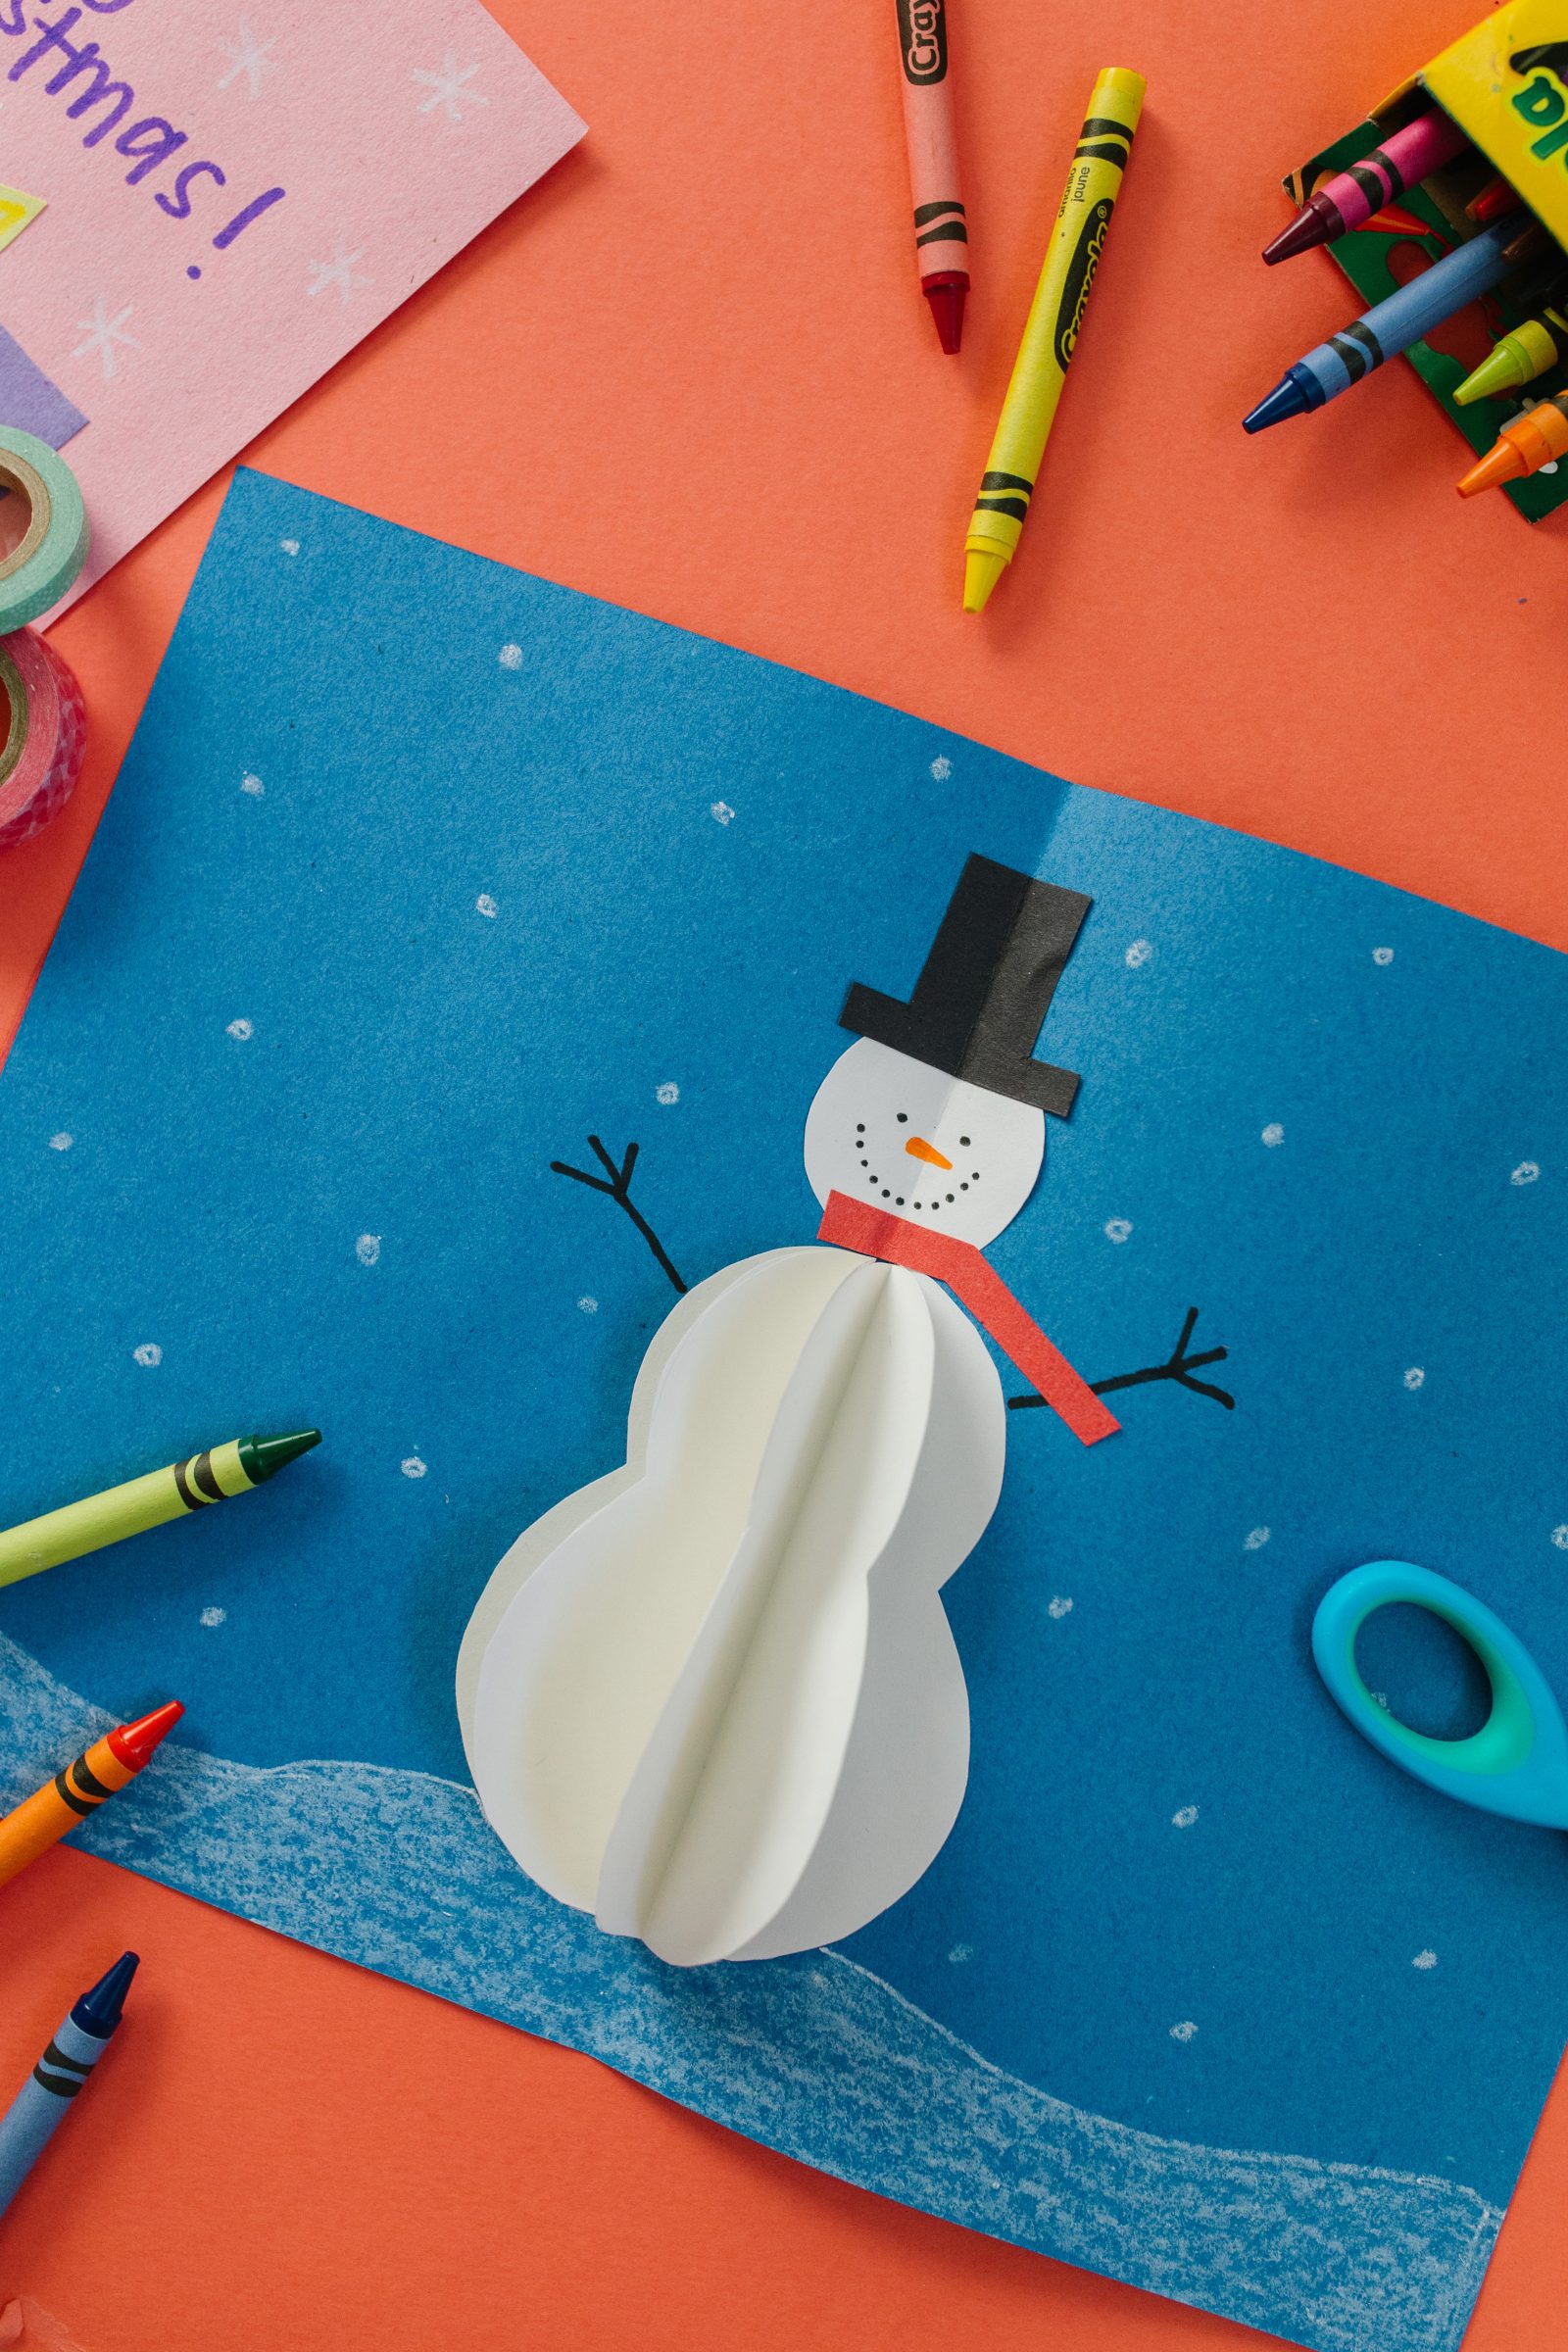 Christmas Crafts for Kids: Como Fazer um Cartão Snowman 3D + um tutorial apresentado pelo Top US Craft Blog + The Pretty Life Girls